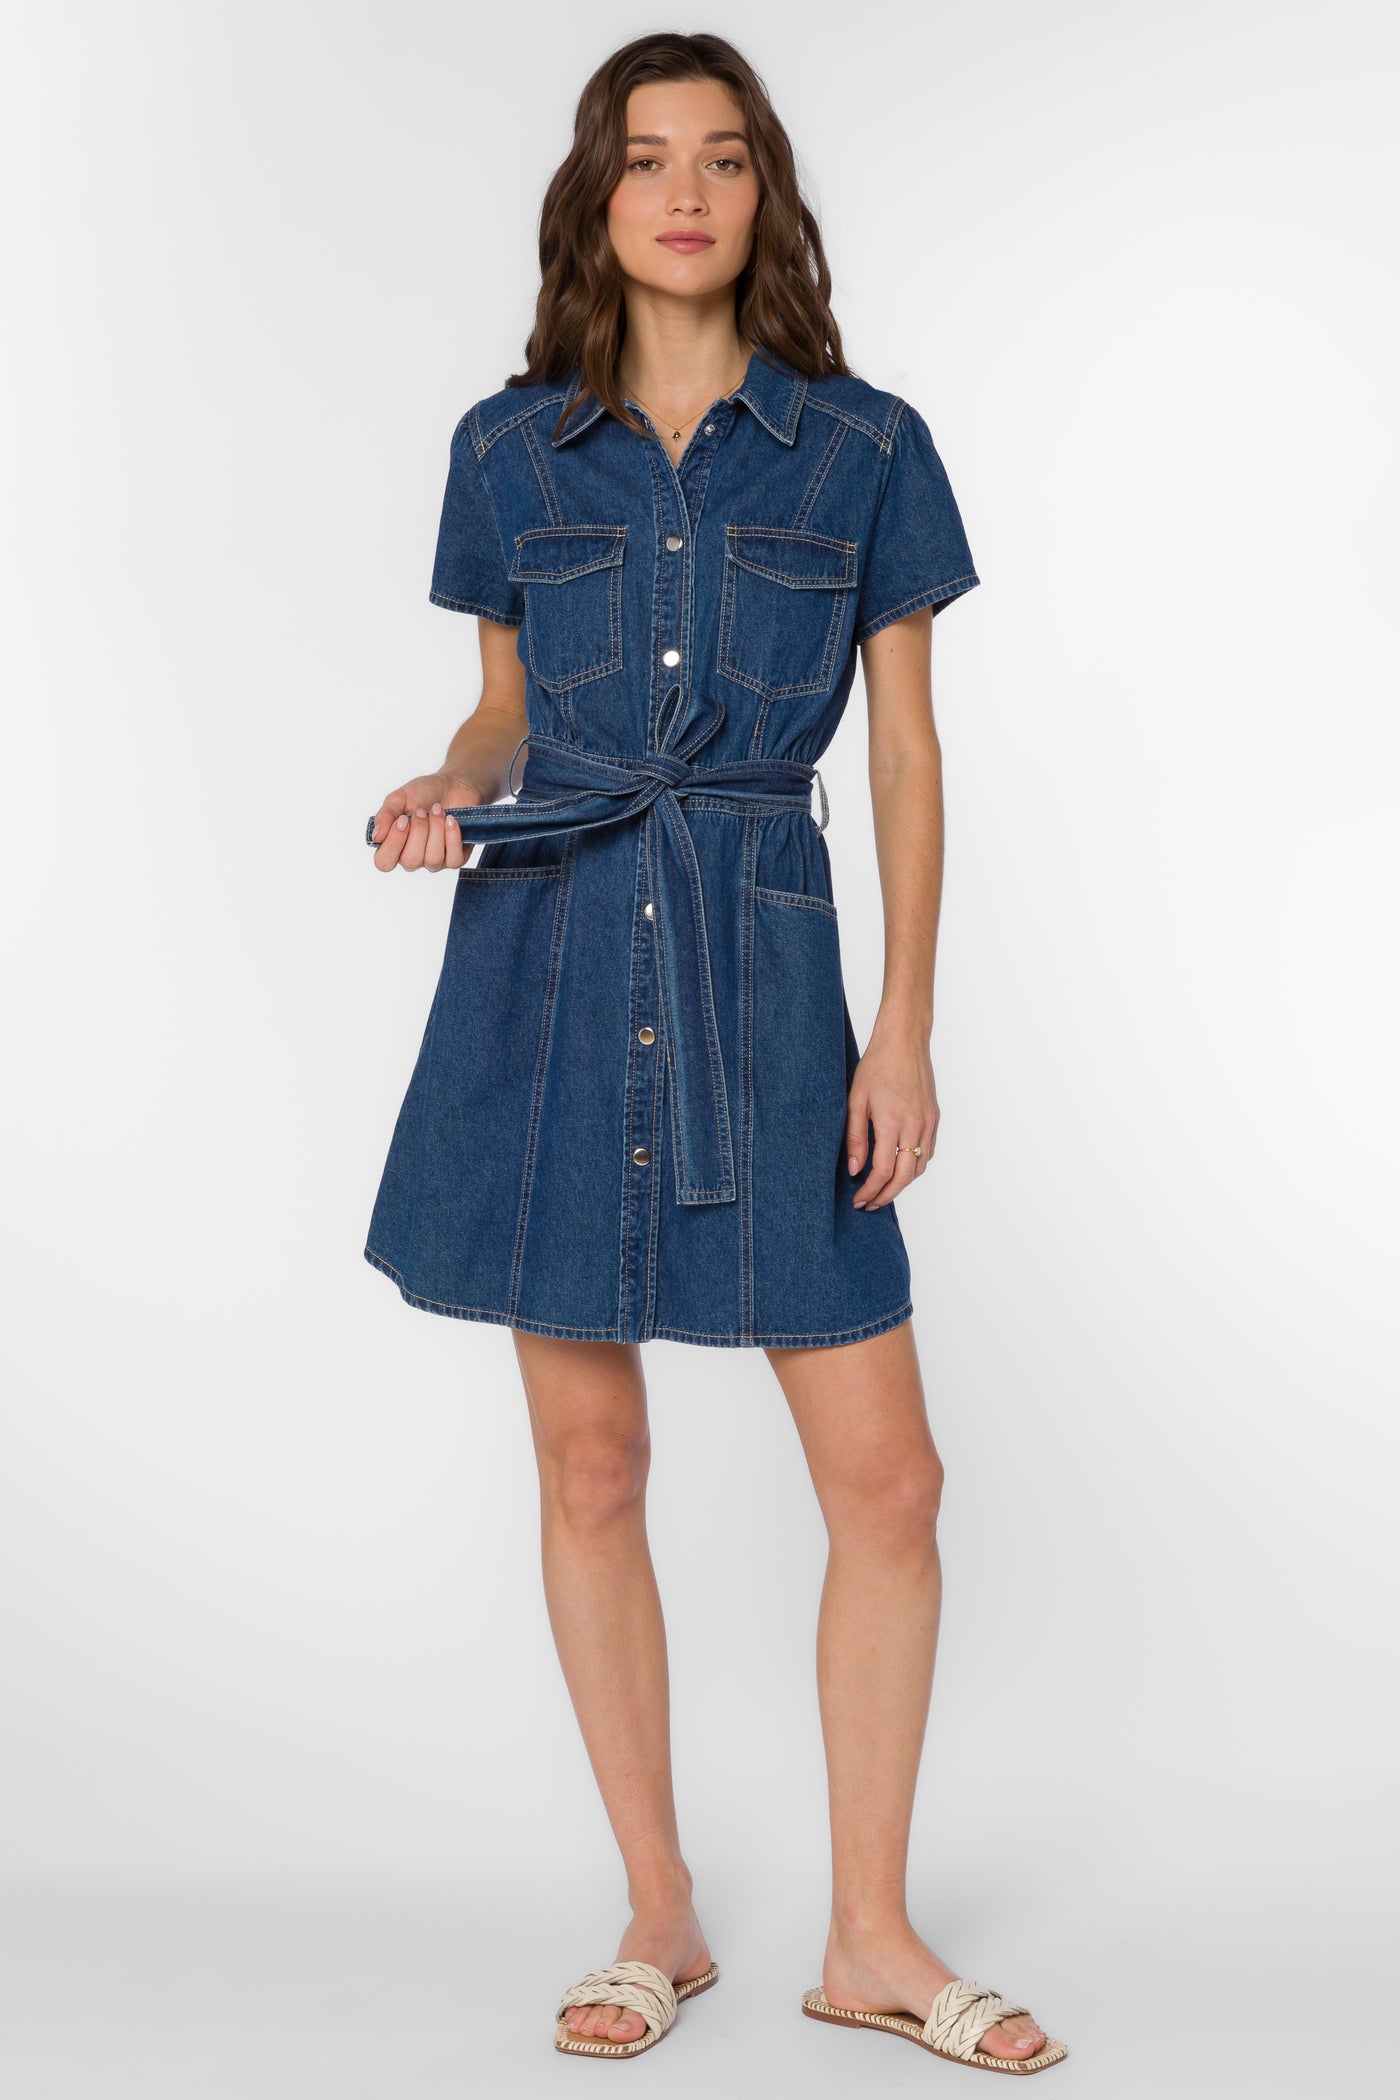 Fonda Vintage Blue Dress - Dresses - Velvet Heart Clothing